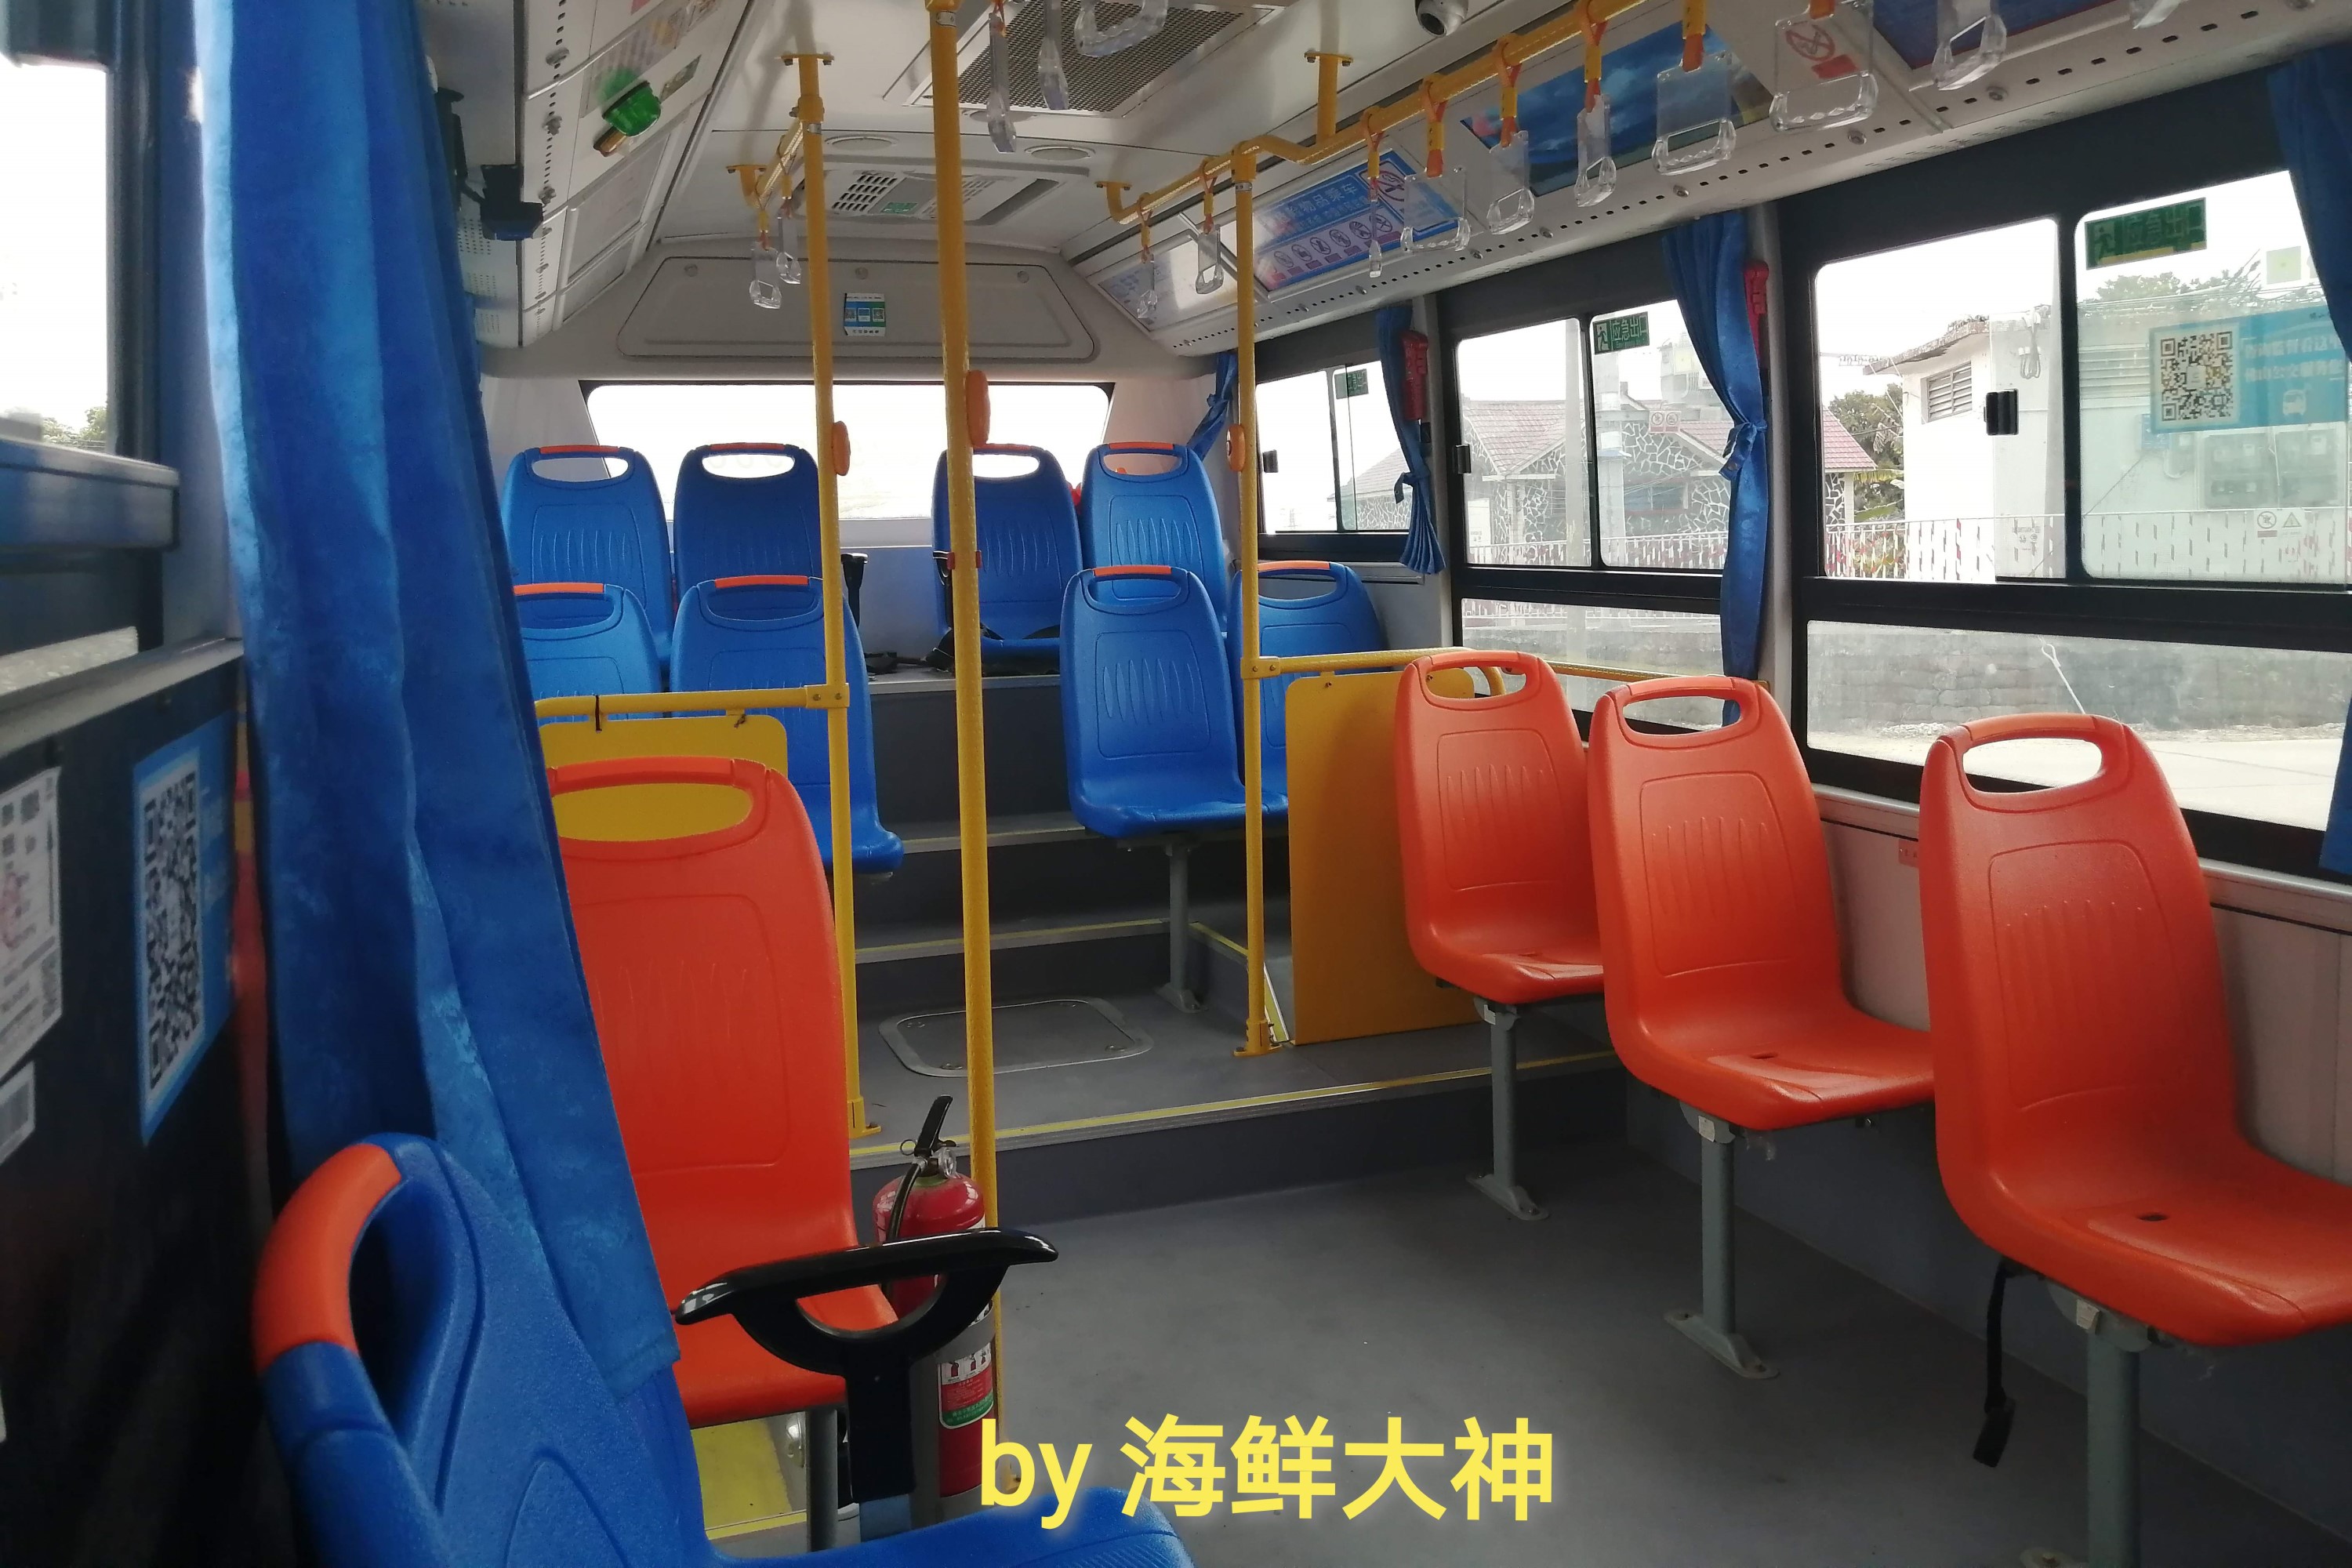 公交车内部结构图解-图库-五毛网